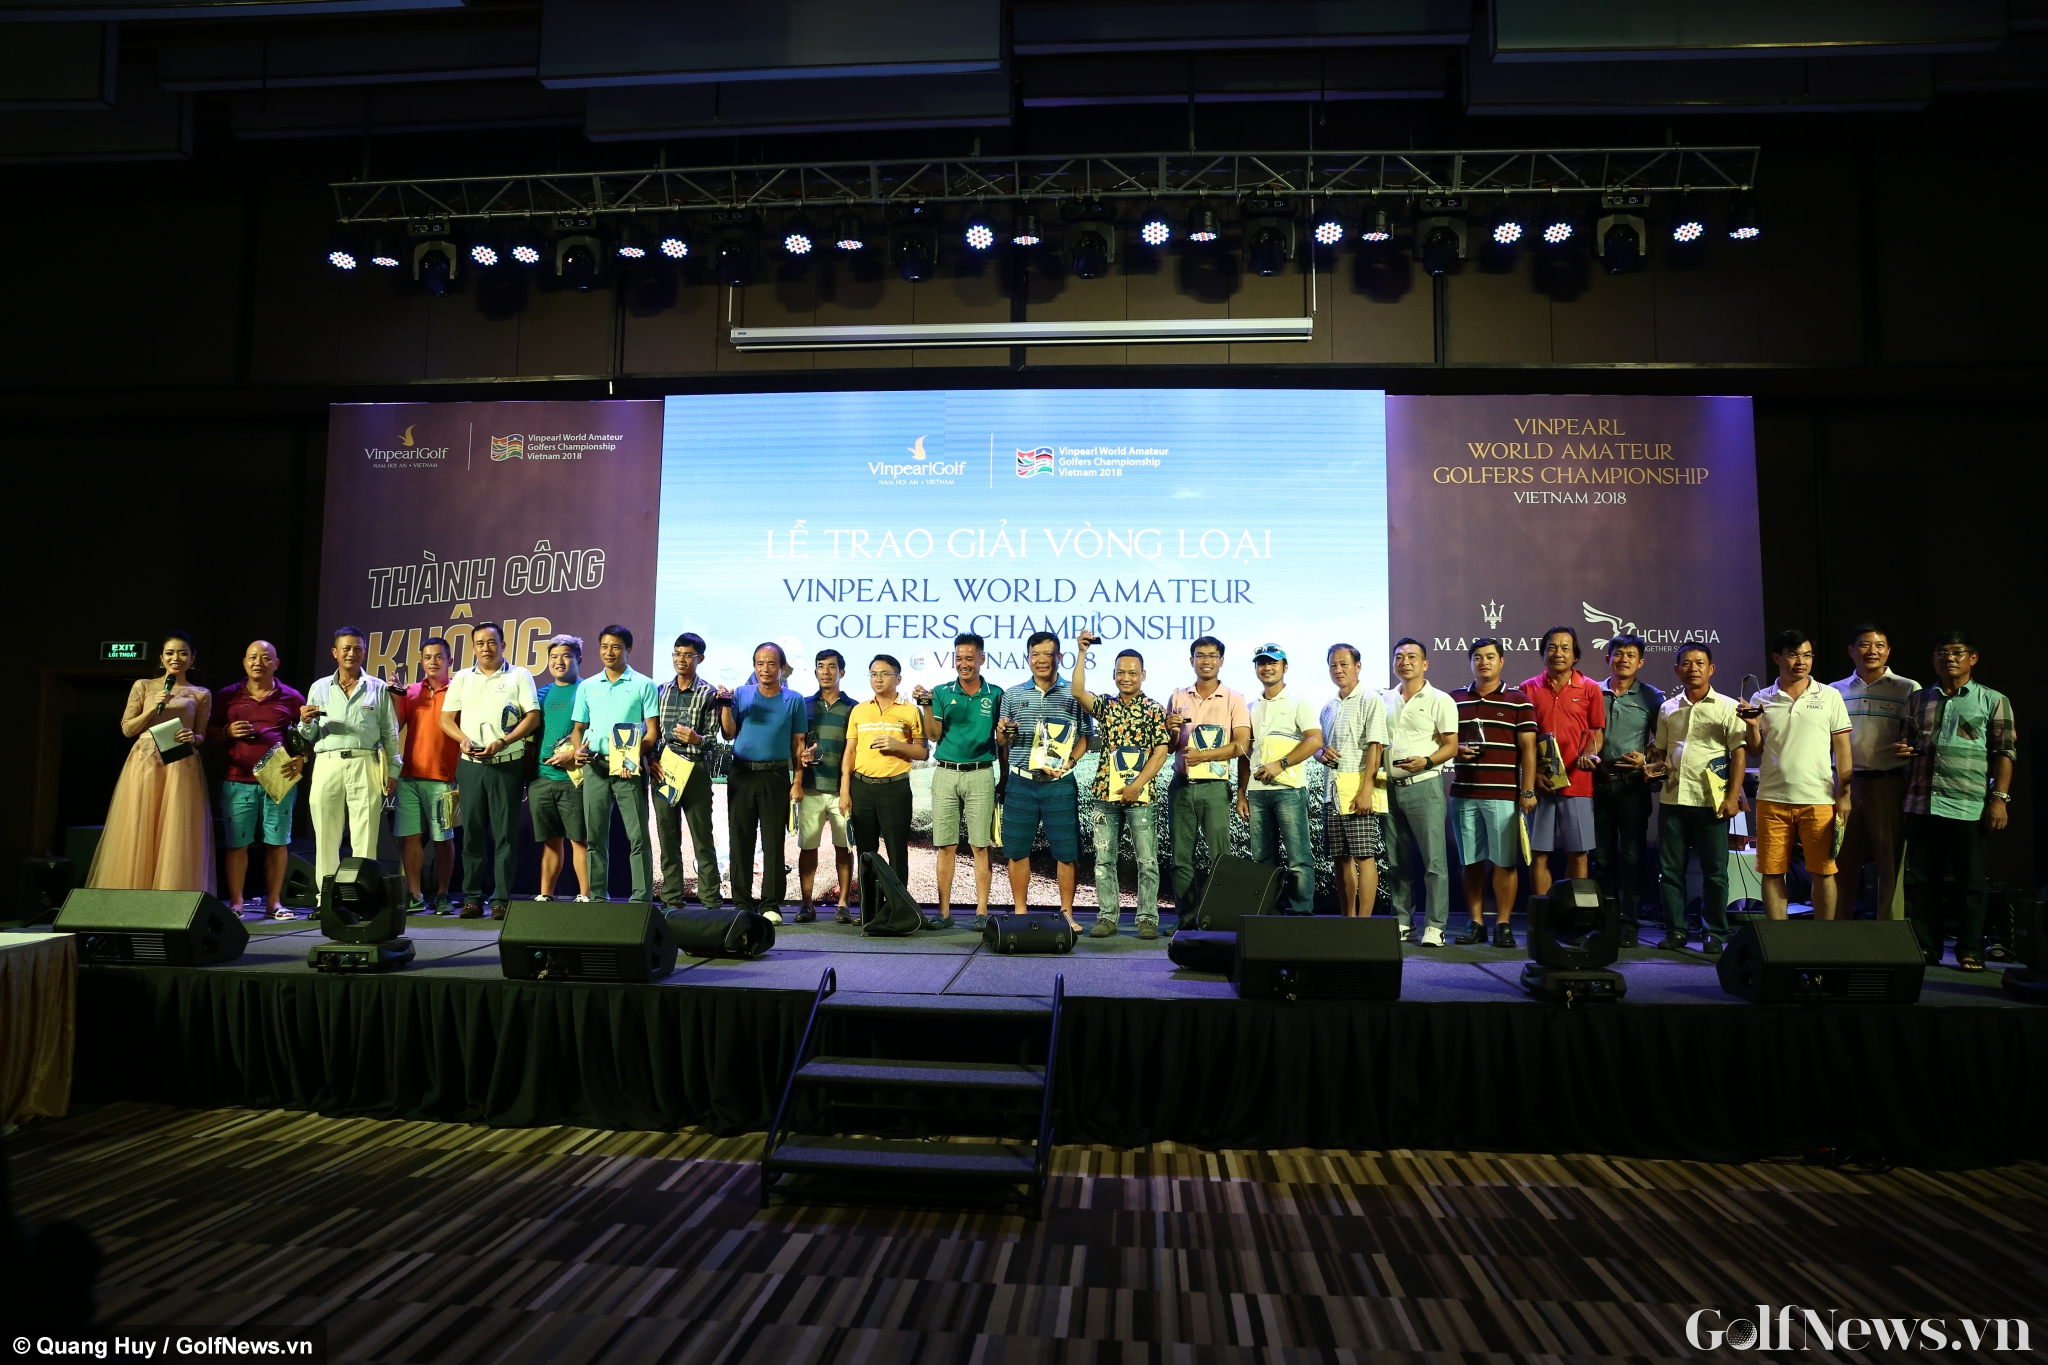 Vinpearl WAGC Vietnam 2018: Lộ diện 25 gôn thủ đầu tiên vào Vòng chung kết Việt Nam